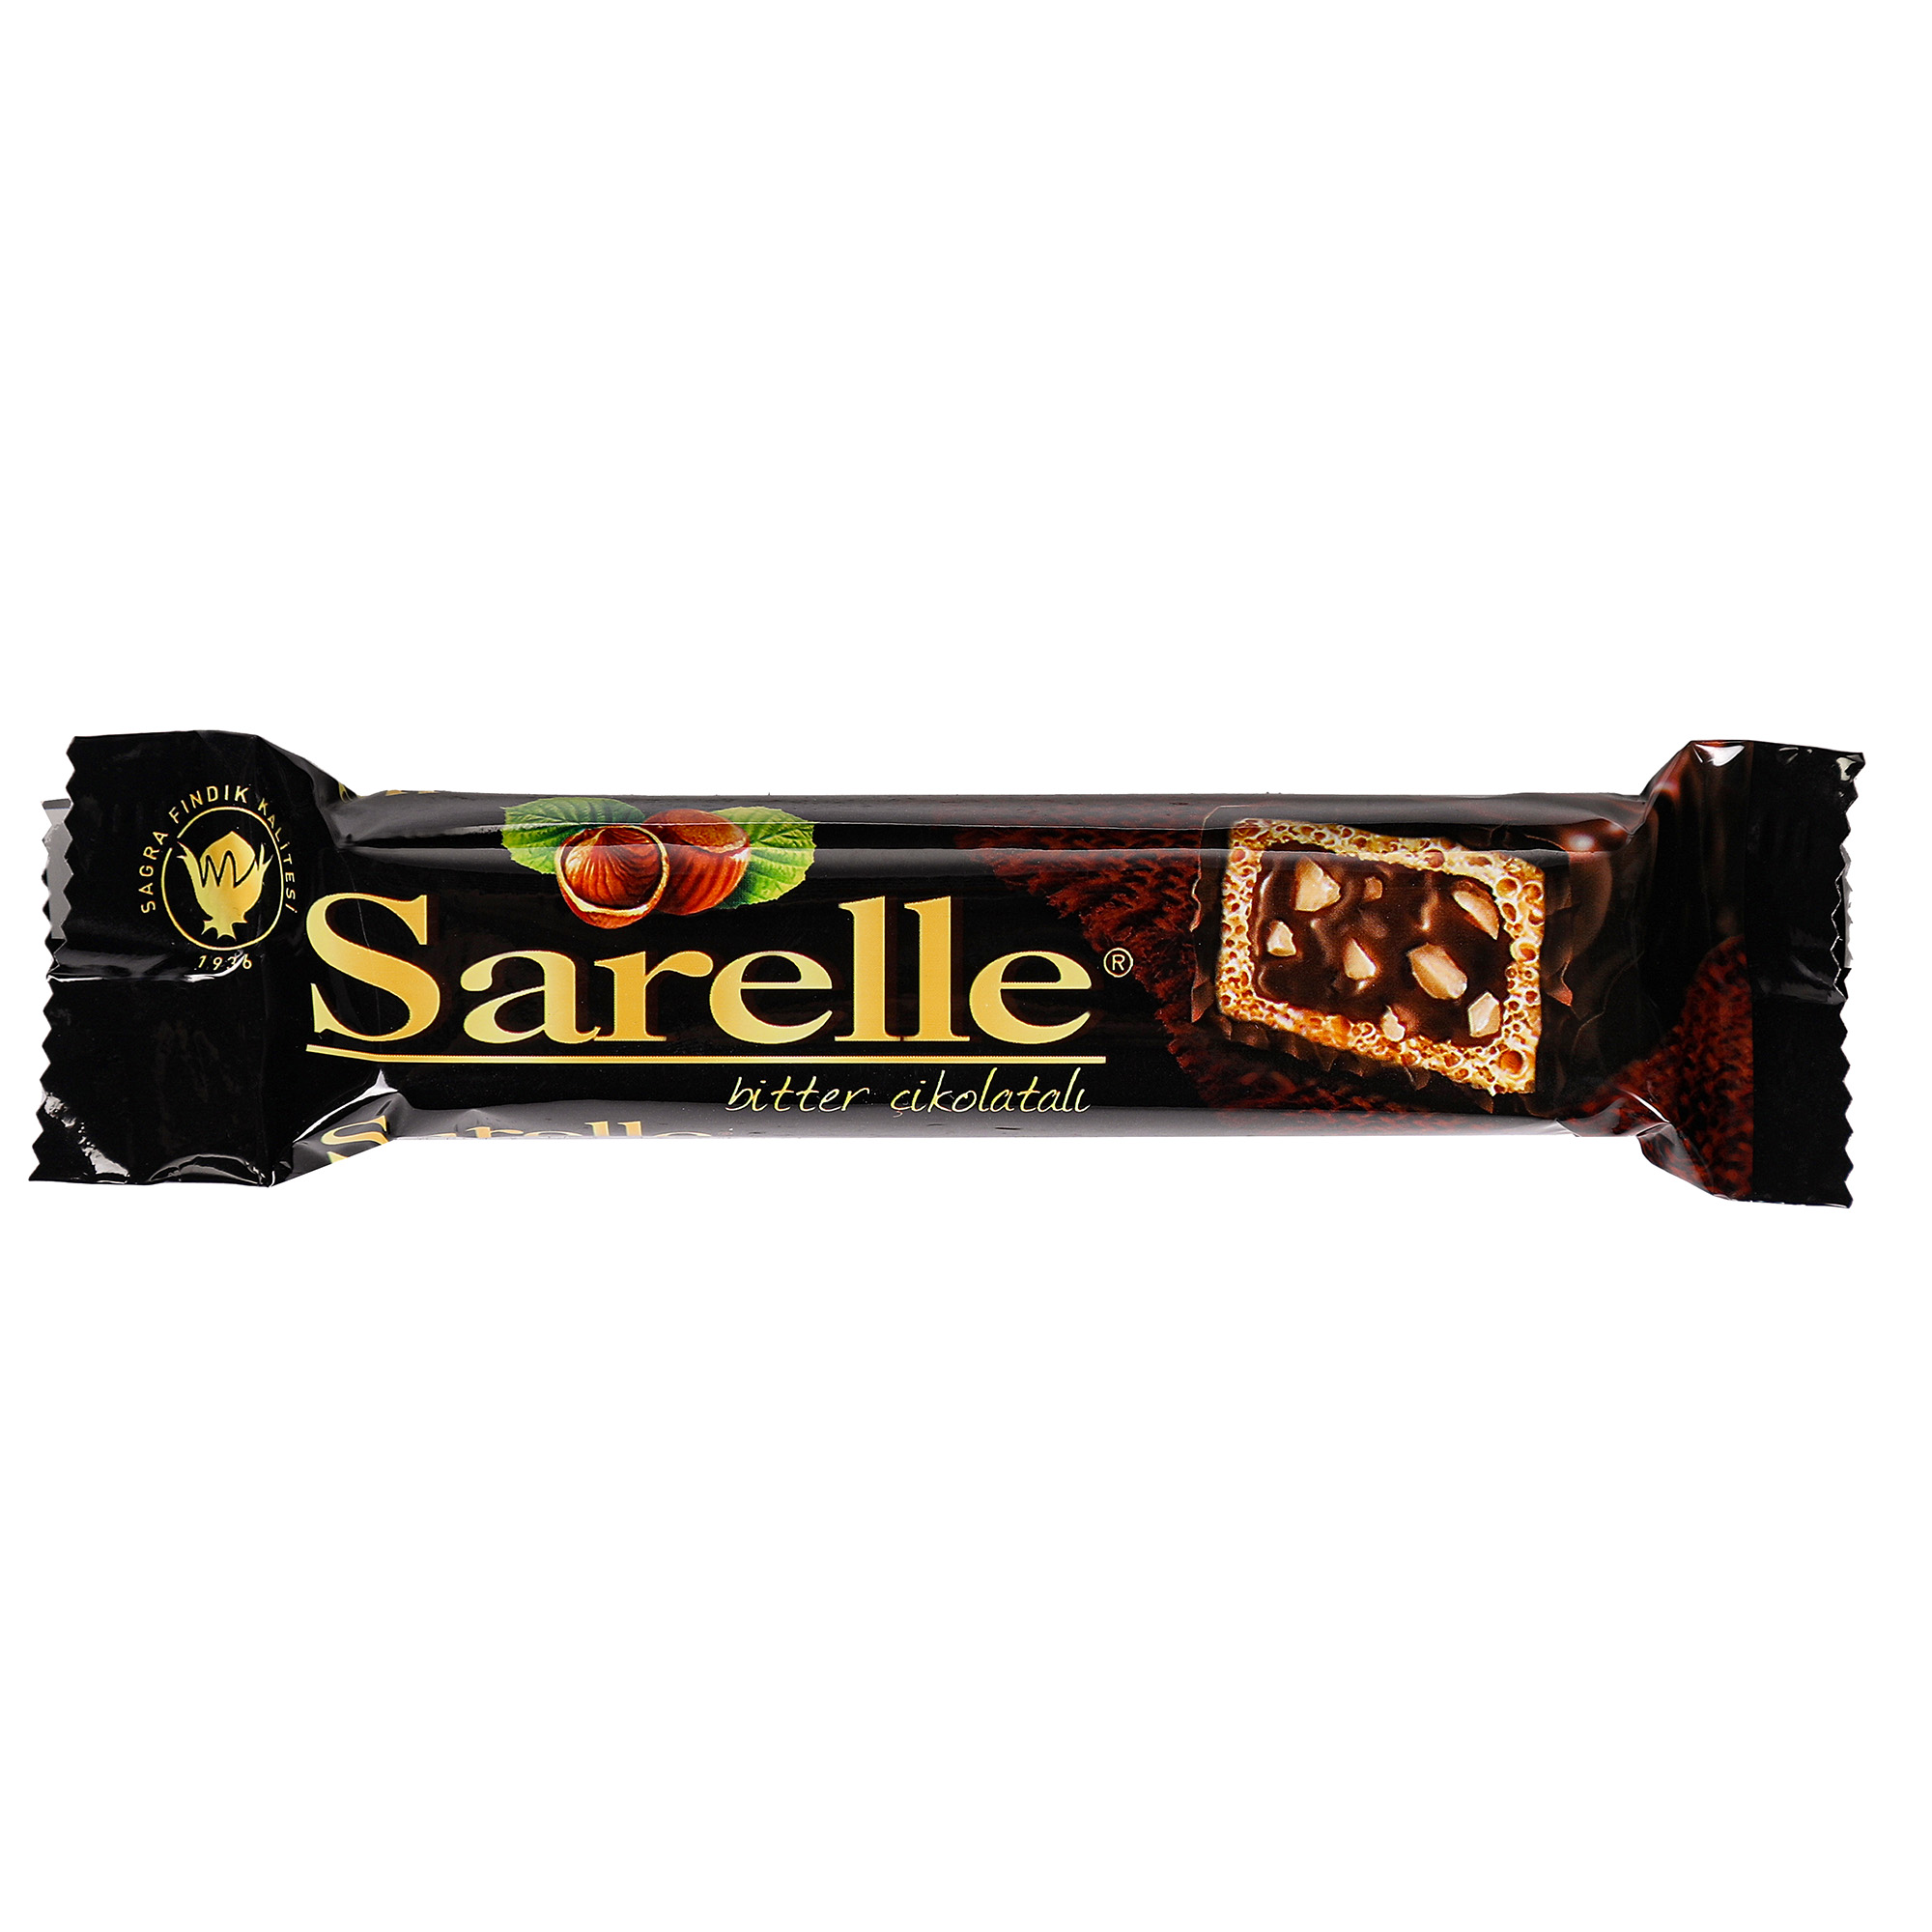 Вафли Sarelle с орехом и шоколадынм кремом в темном шоколаде, 33 г вафли sarelle с орехом и орехово шоколадным кремом 33 г